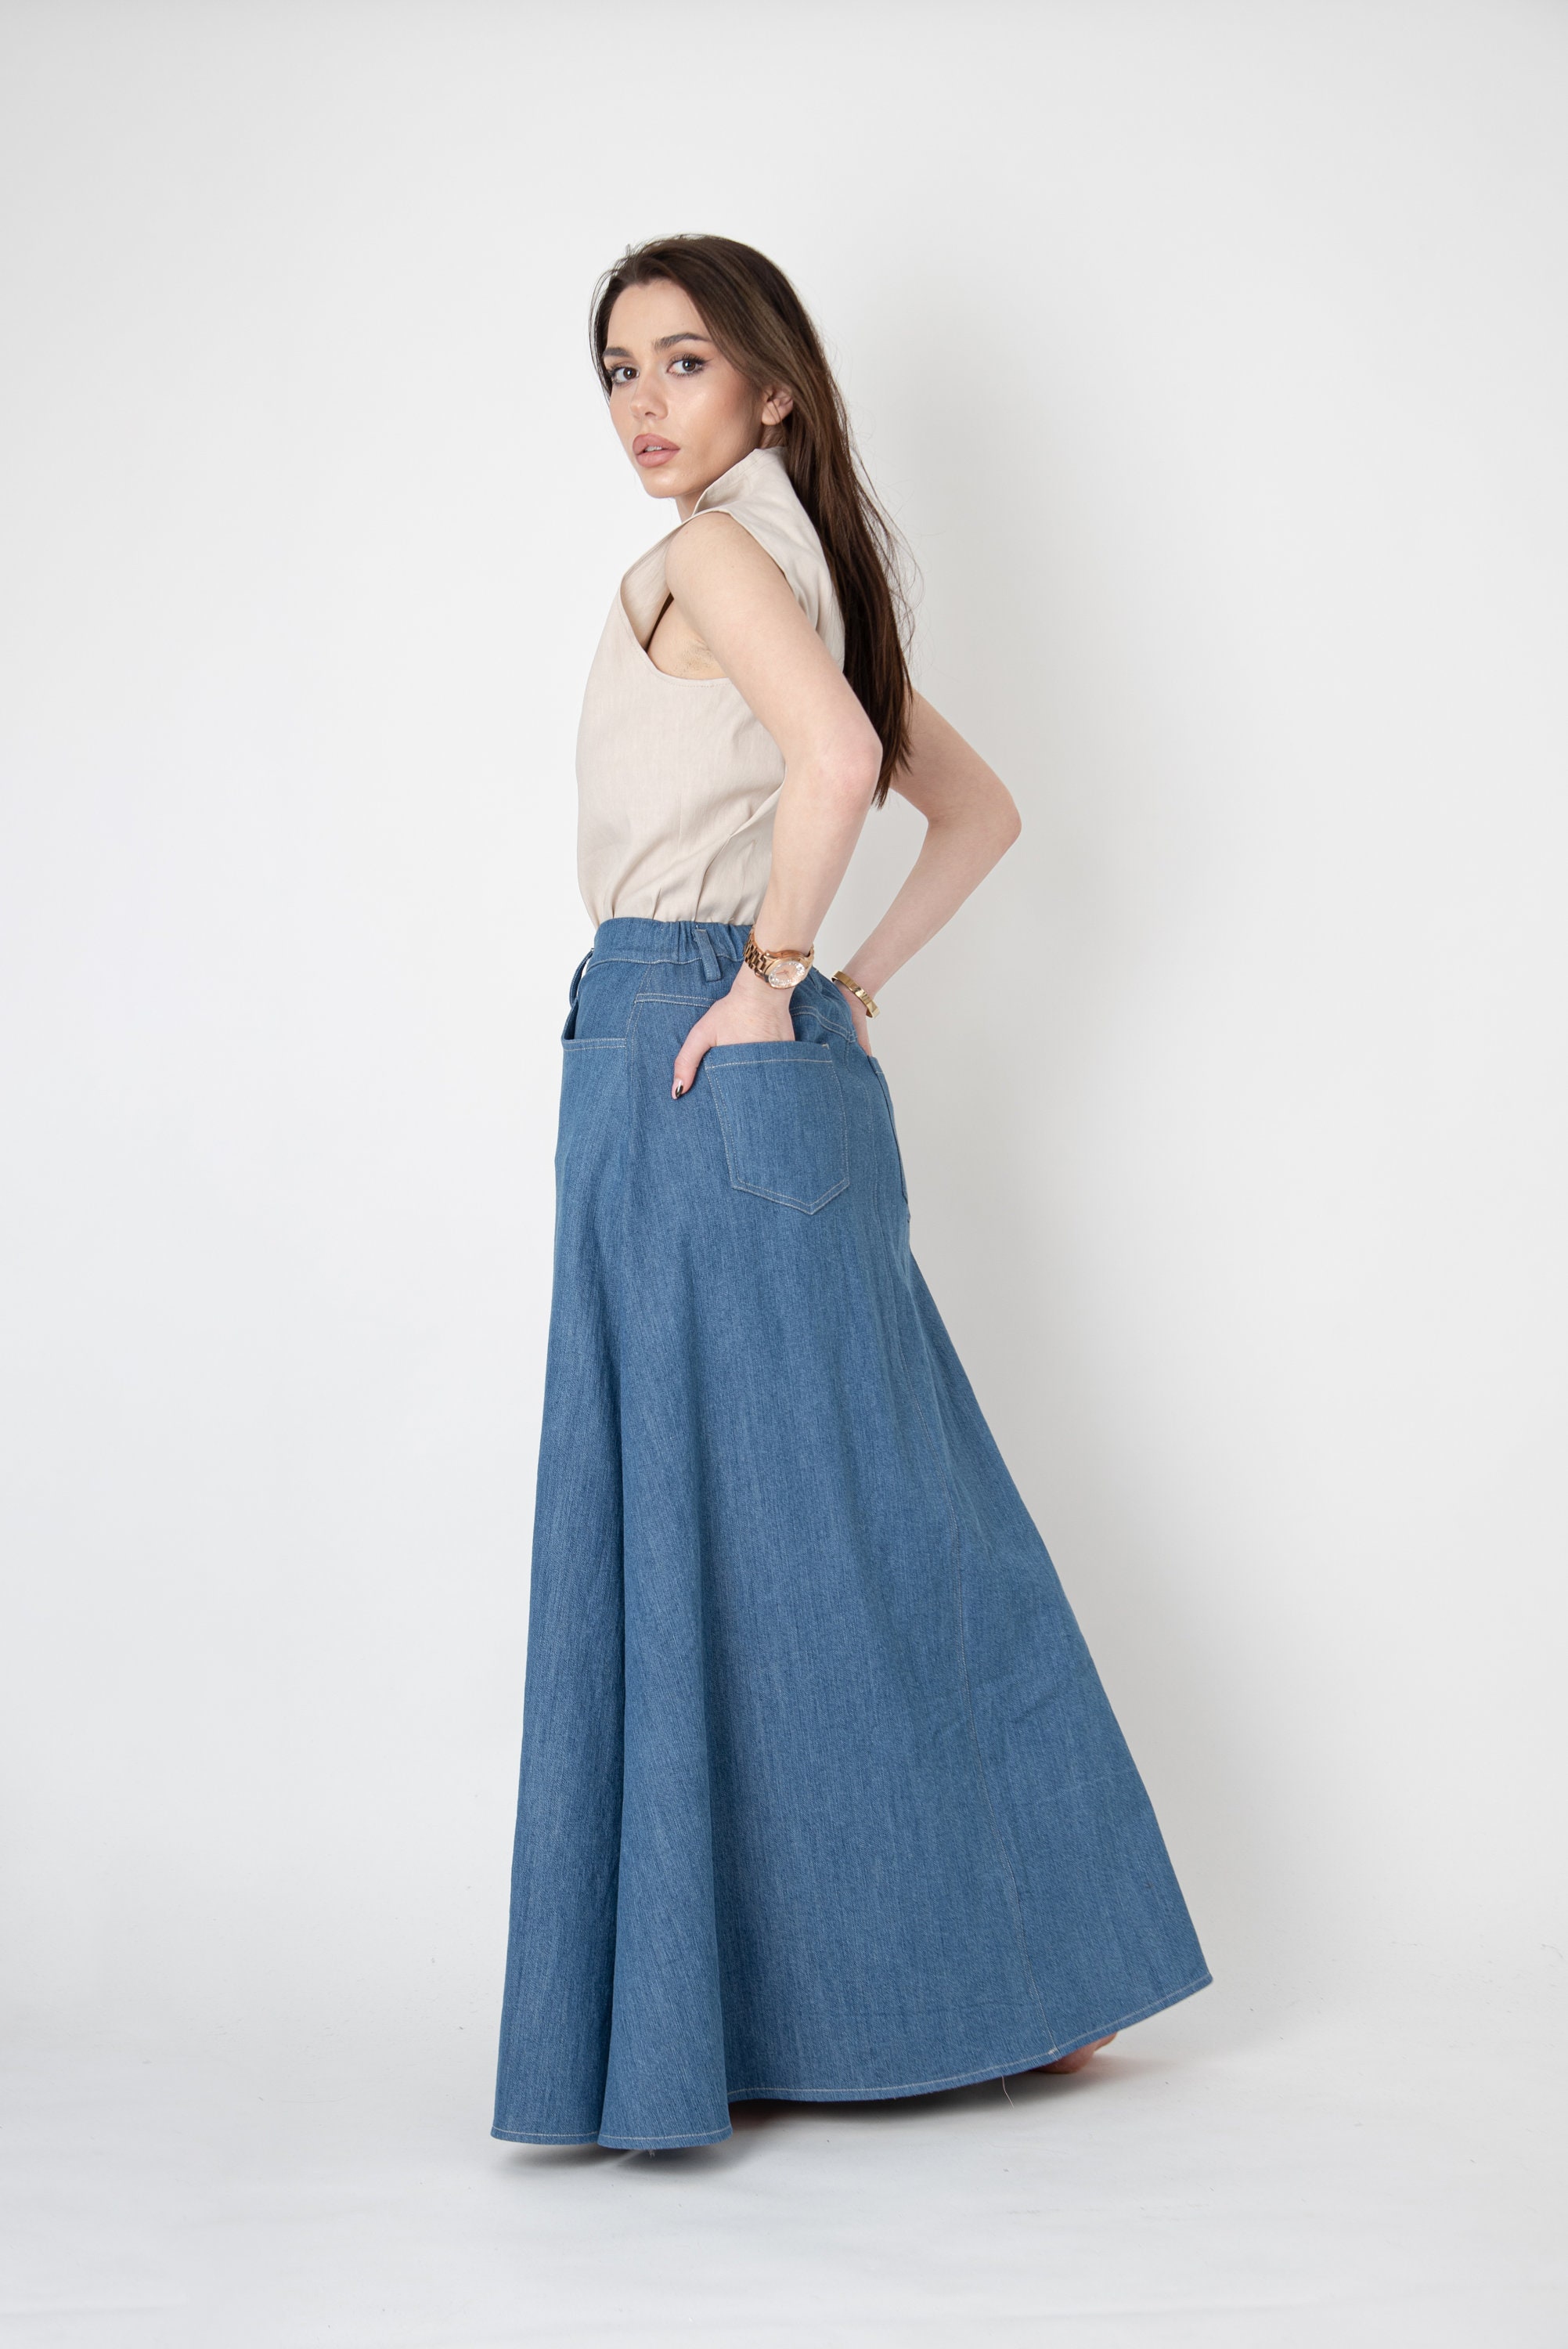 Denim Skirt/long Denim Skirt/maxi Skirt/high Waist Skirt/elastic